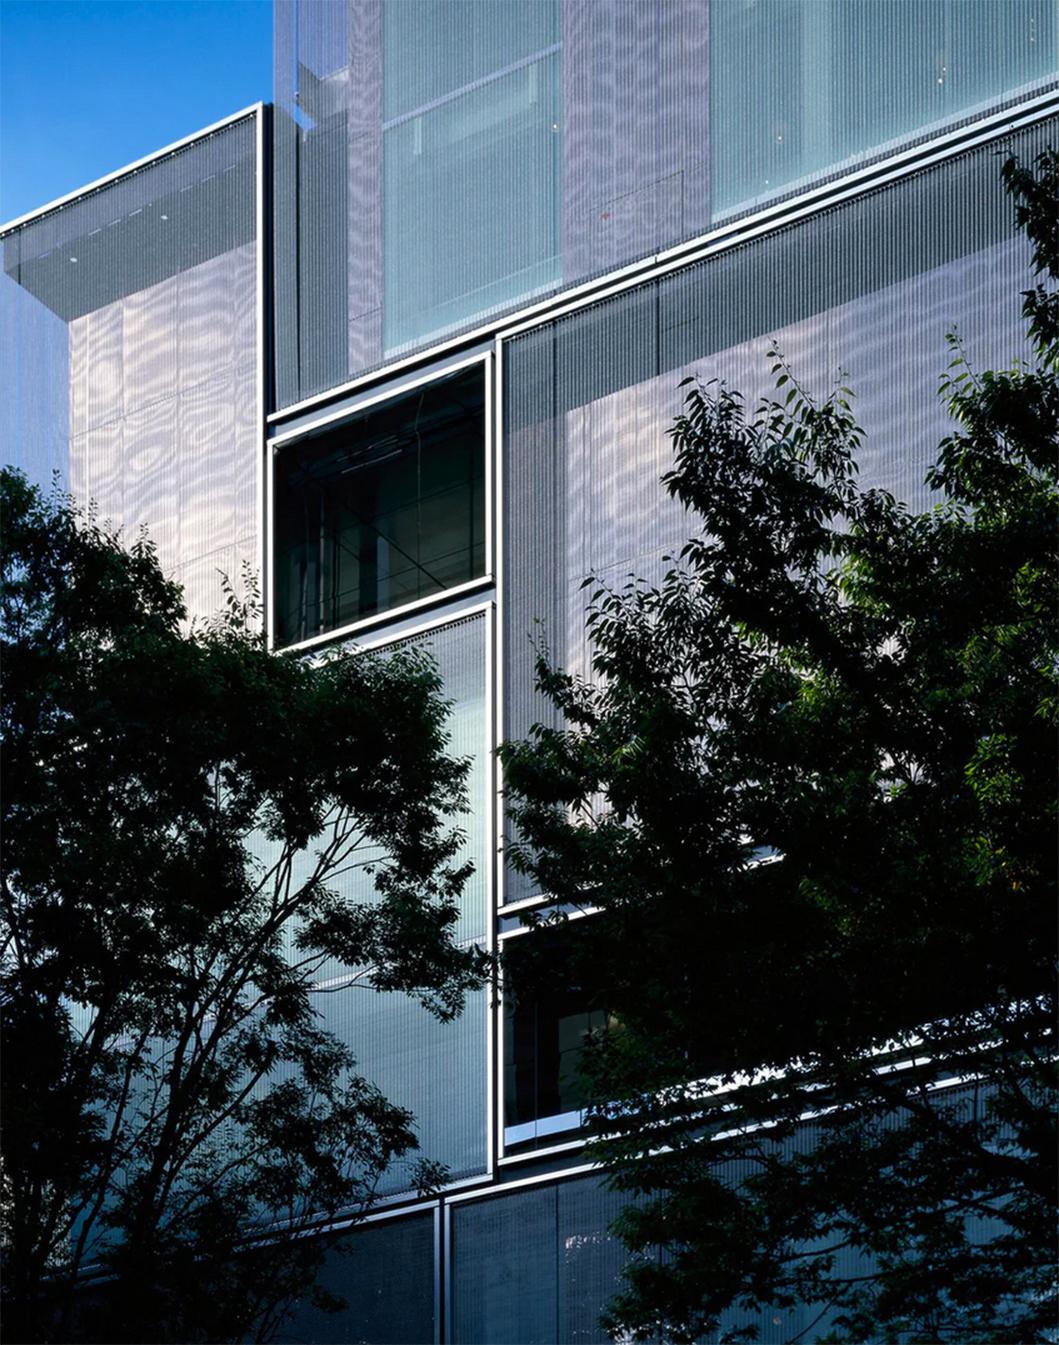 The Louis Vuitton Maison Osaka Midosuji was created by architect